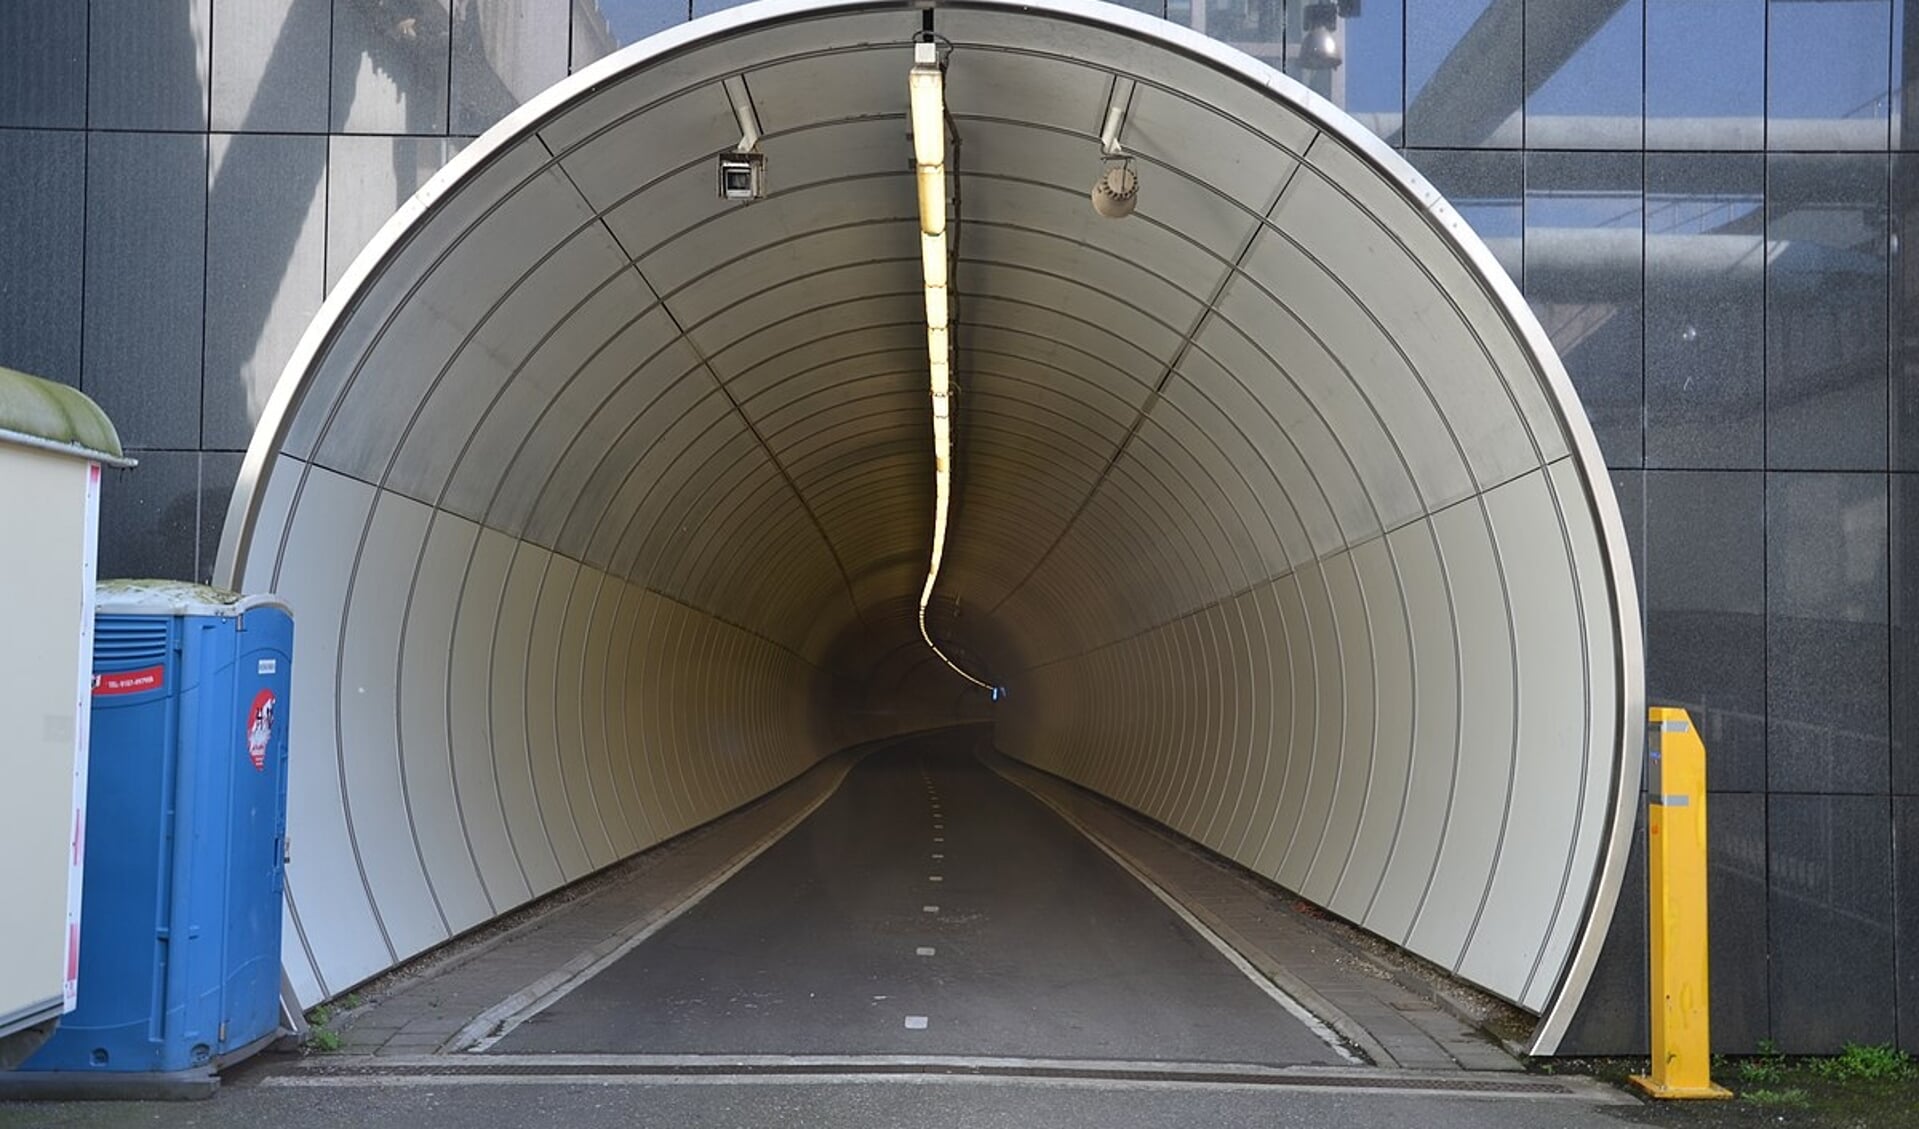 De Tweede Heinenoordtunnel is vanaf woensdag 20 april tot en met donderdag 2 juni afgesloten tussen 7.00 en 17.00.